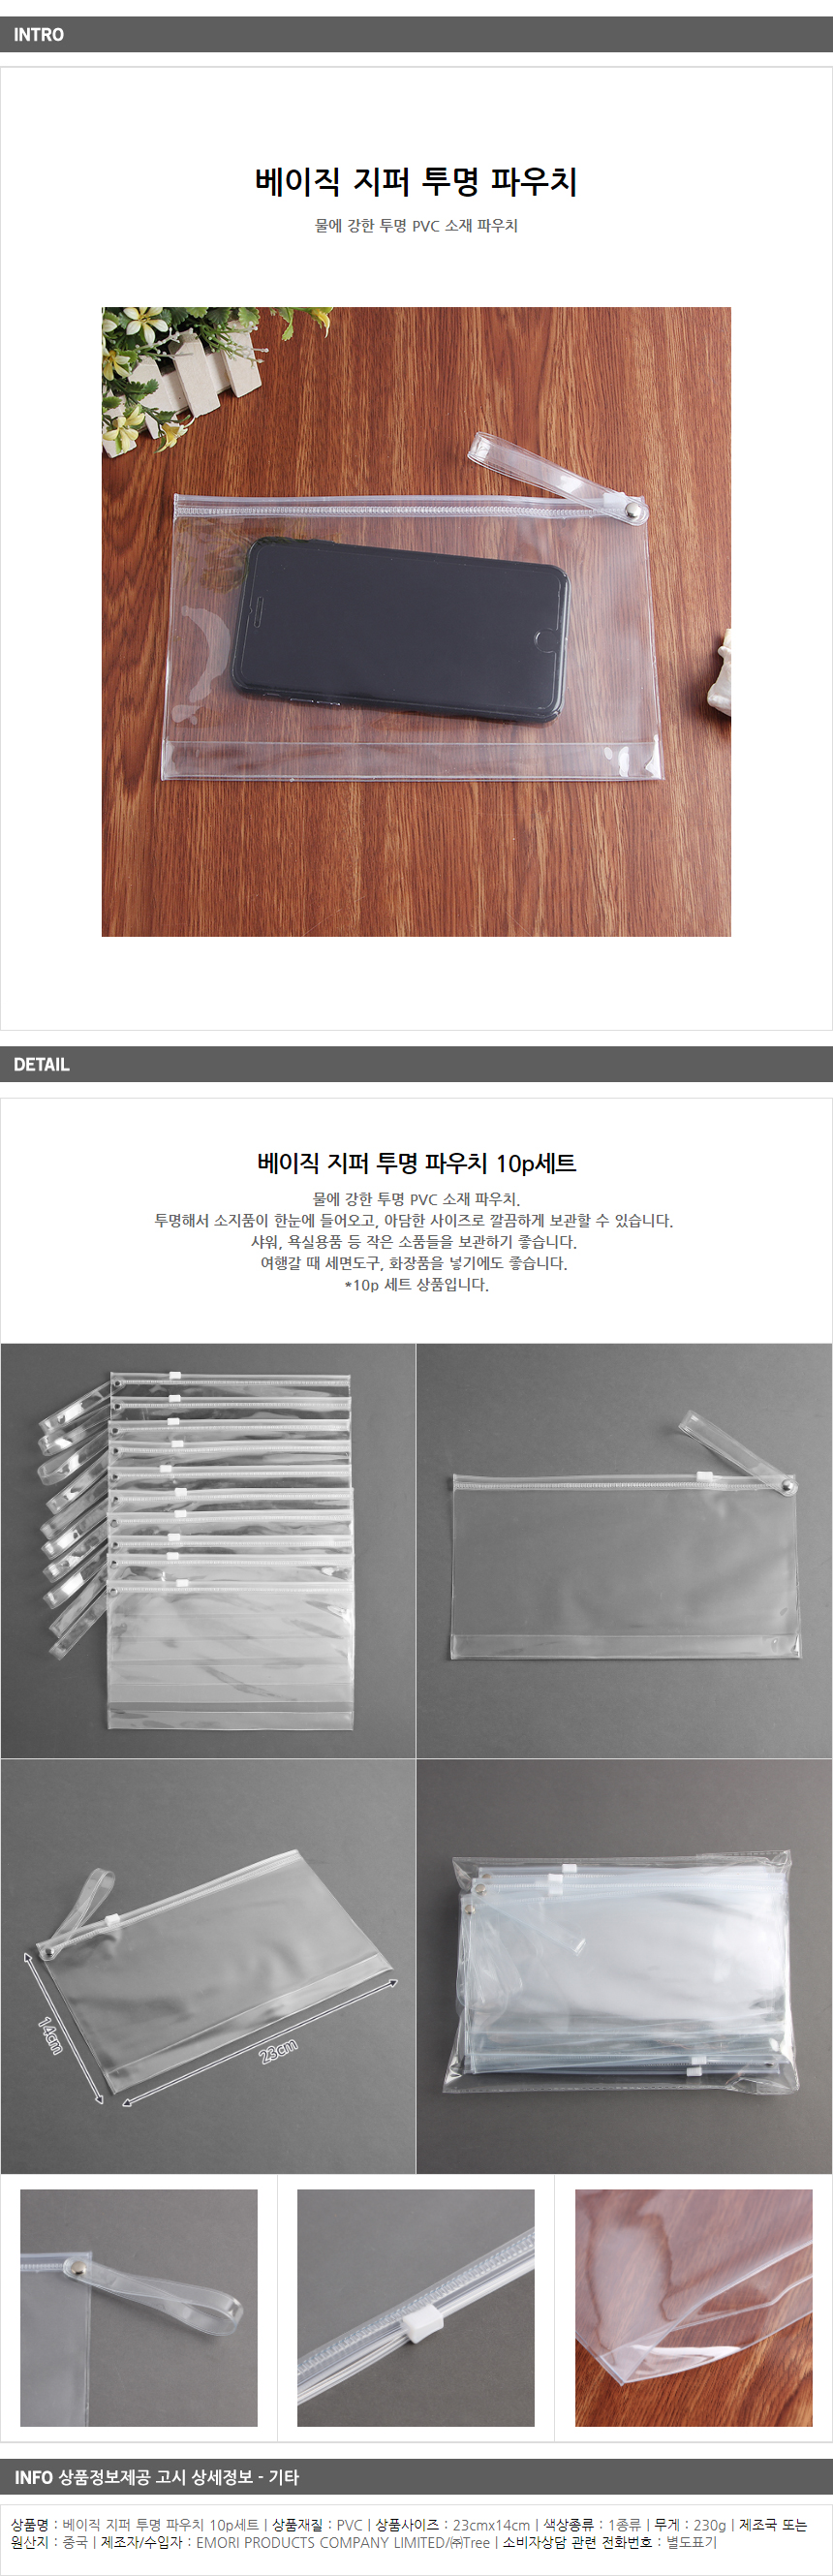 지퍼 투명 파우치 10p / 어린이집 홍보인쇄 필통